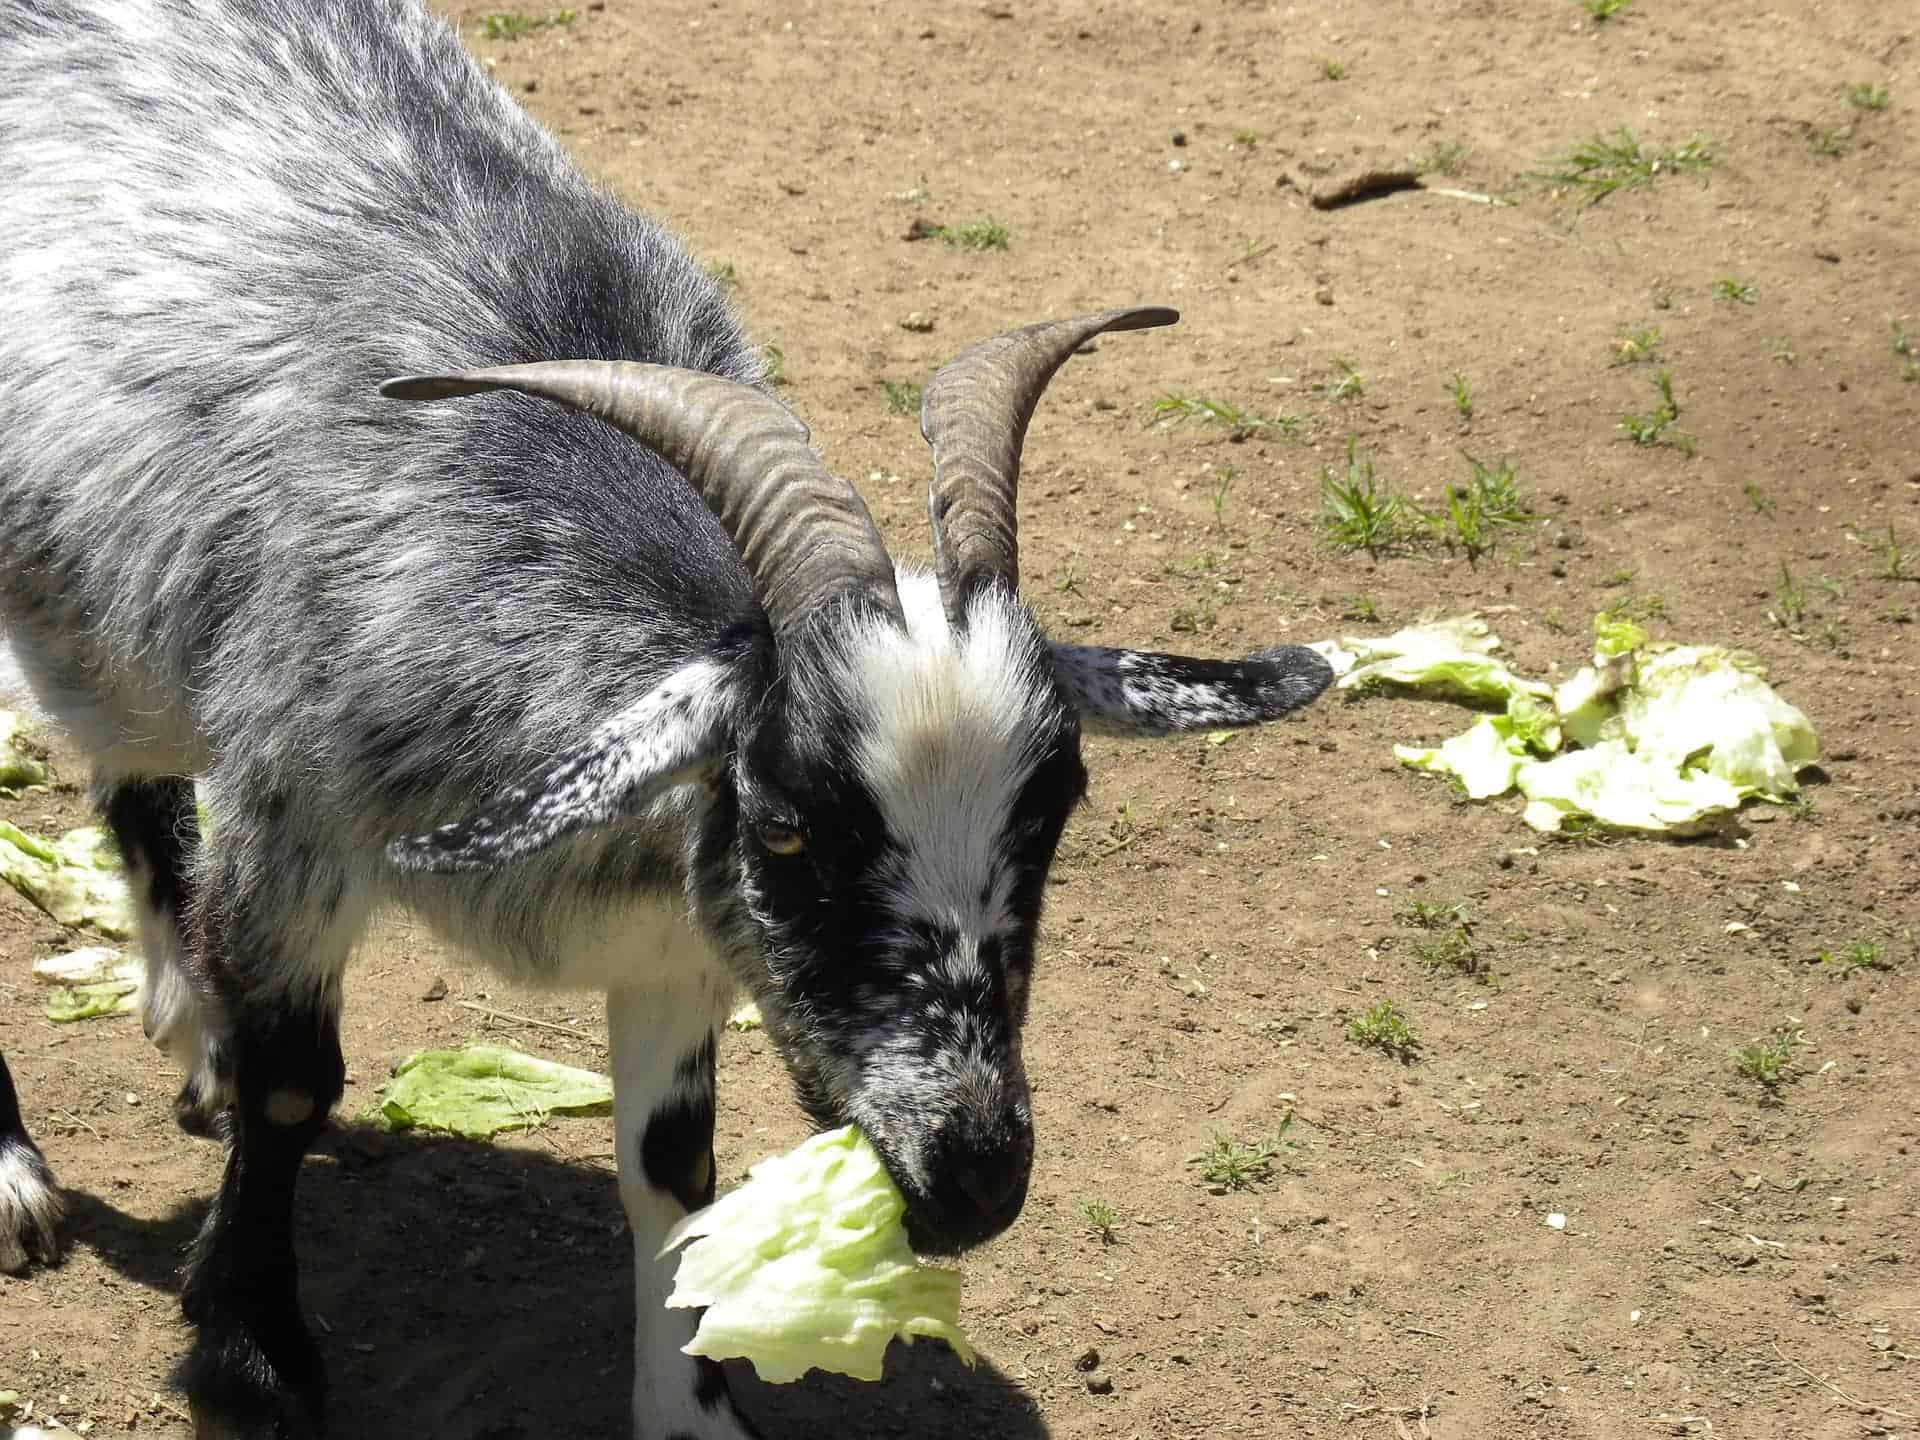 Goat eating lettuce